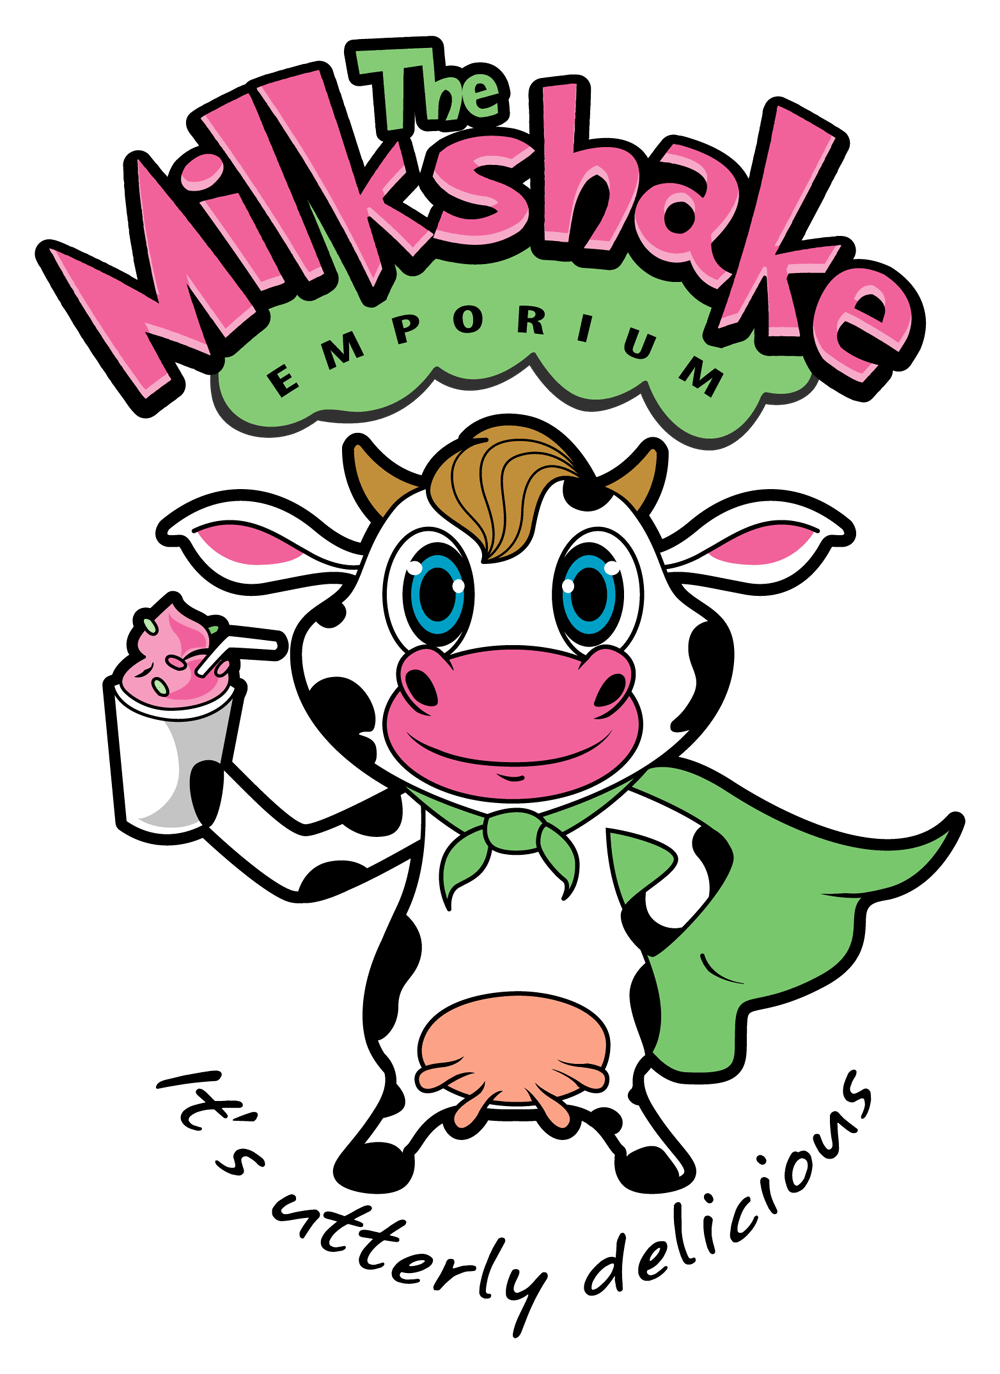 Milkshake Logo - Cartoon logo design. The Milkshake Emporium promises utterly